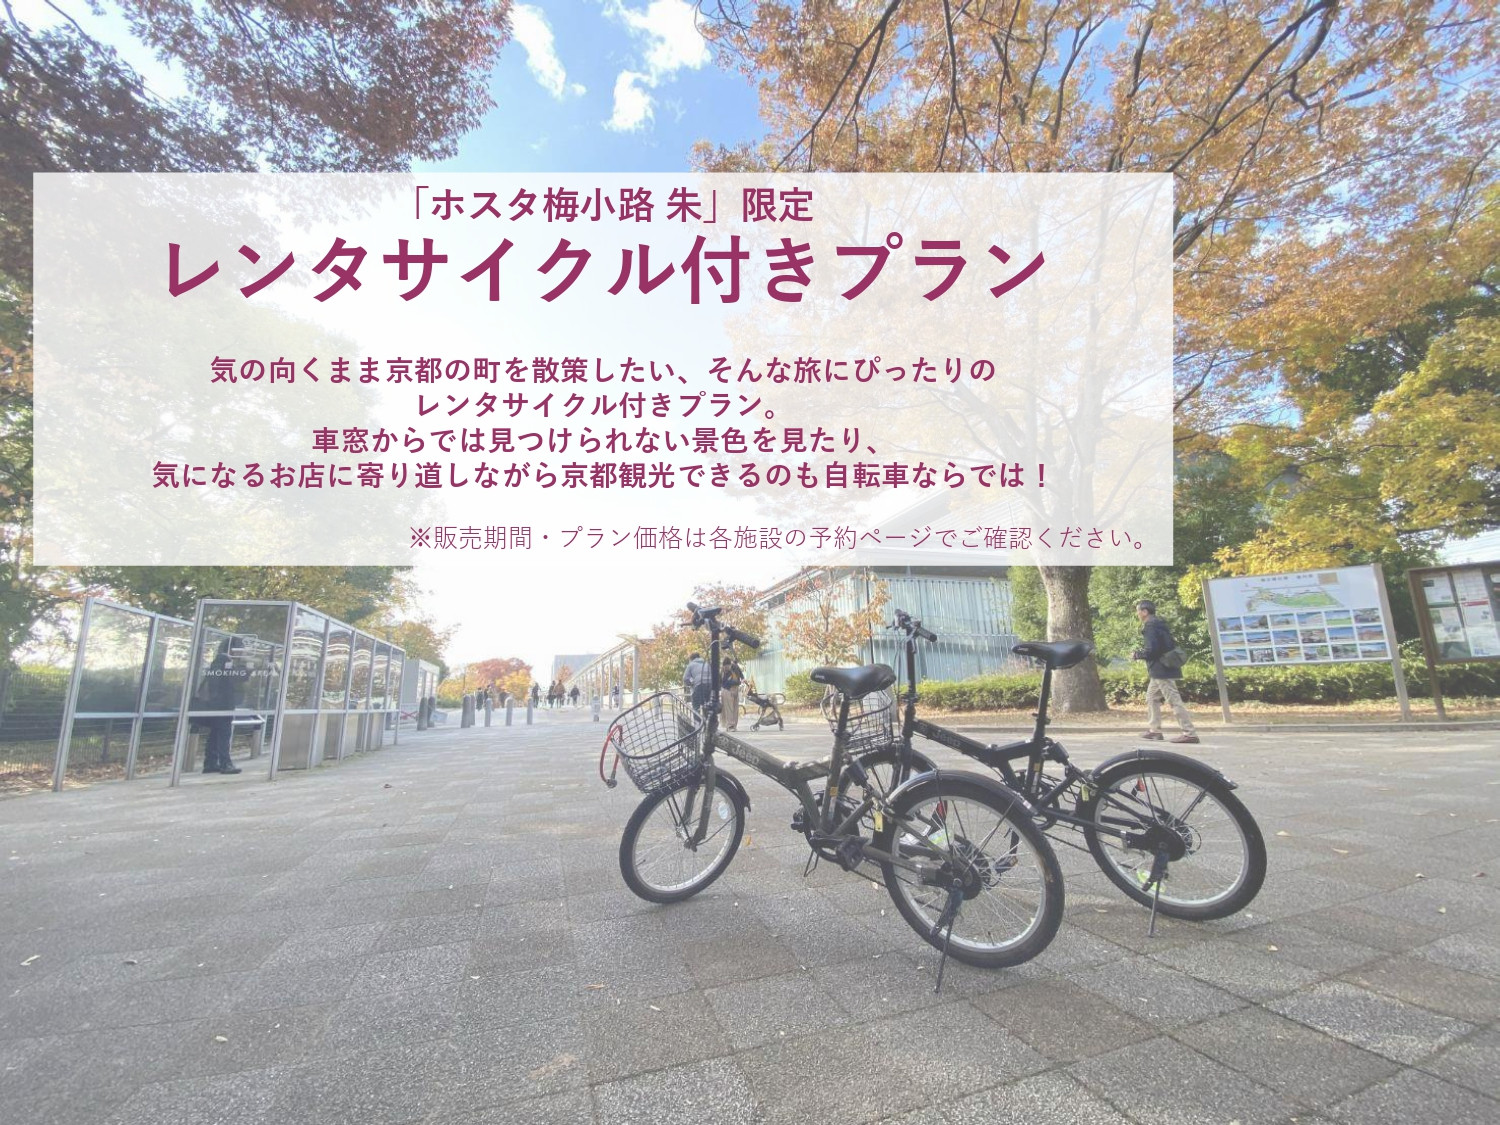 □一棟貸しの宿・ホスタ□　アクティブ＆コンパクトに京都を満喫する レンタサイクル付き宿泊プラン